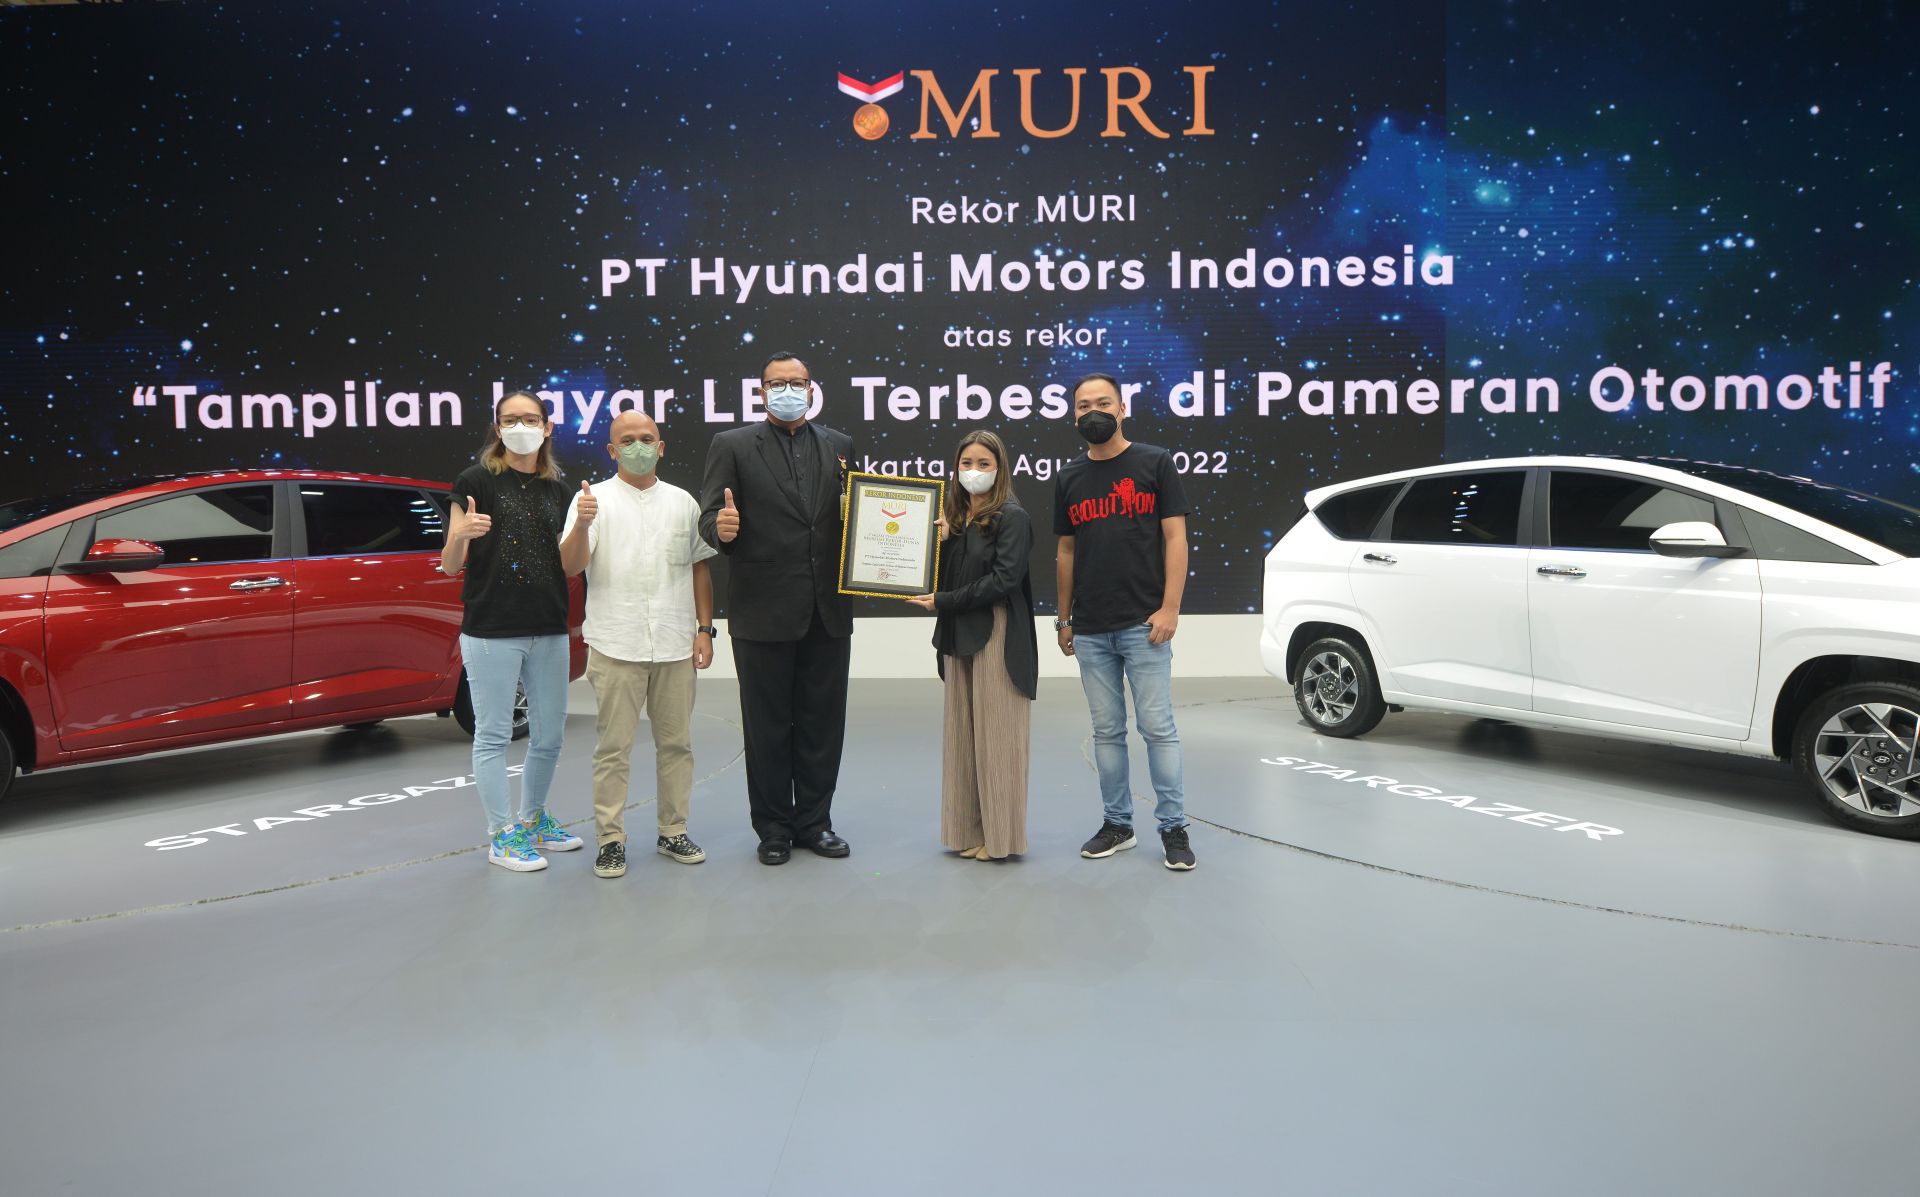 Hyundai Raih Rekor MURI  'Tampilan Layar LED Terbesar Pameran Otomotif' di Perhelatan GIIAS 2022